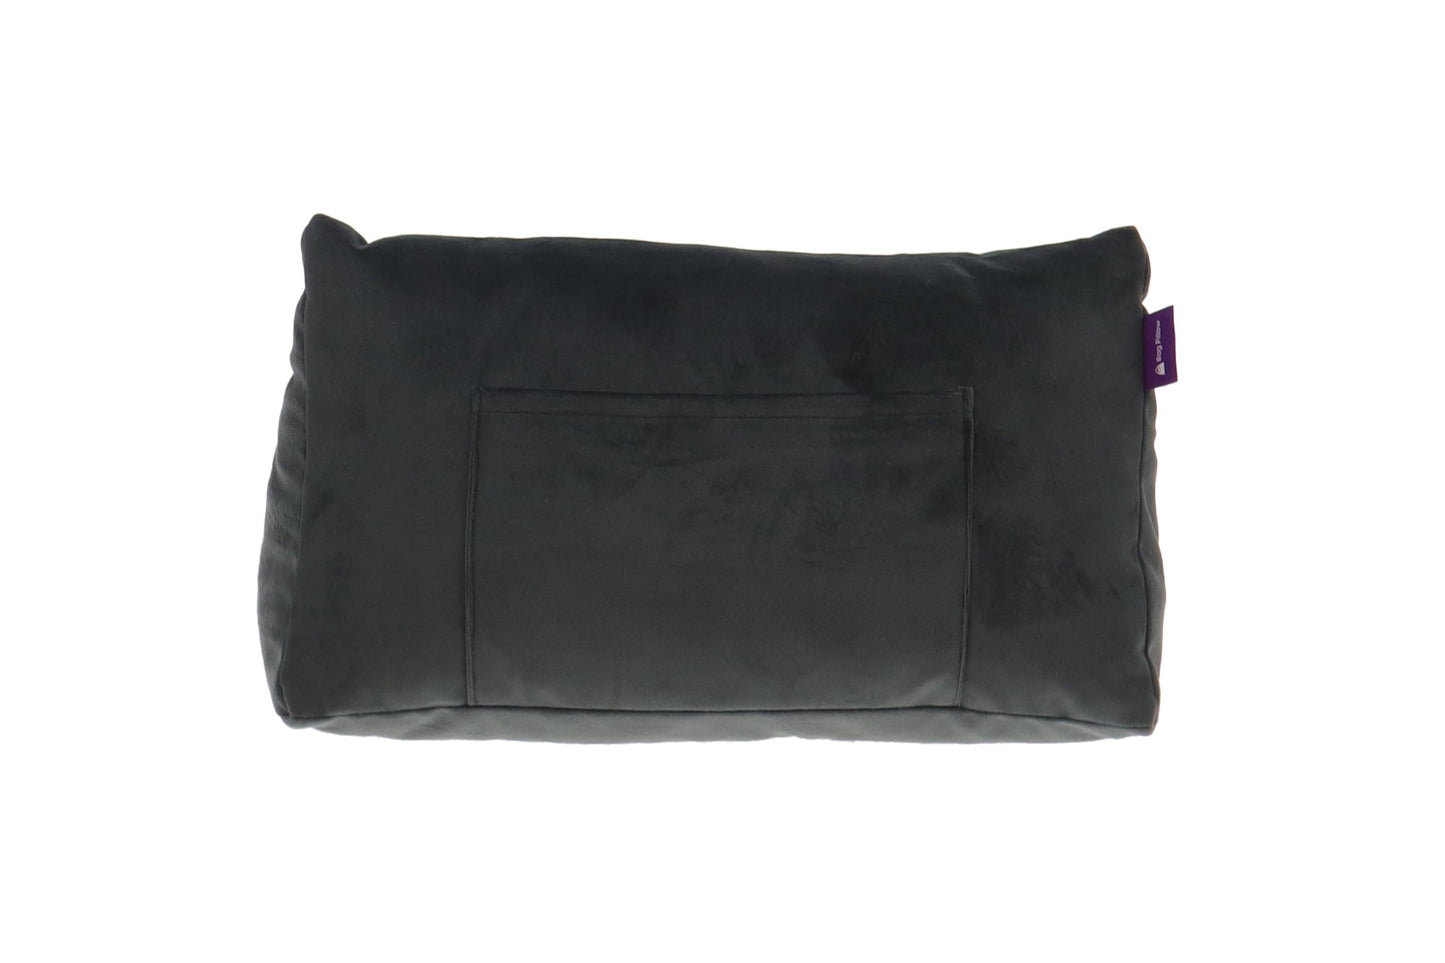 Bag Pillow Grey Velvet Kelly 32